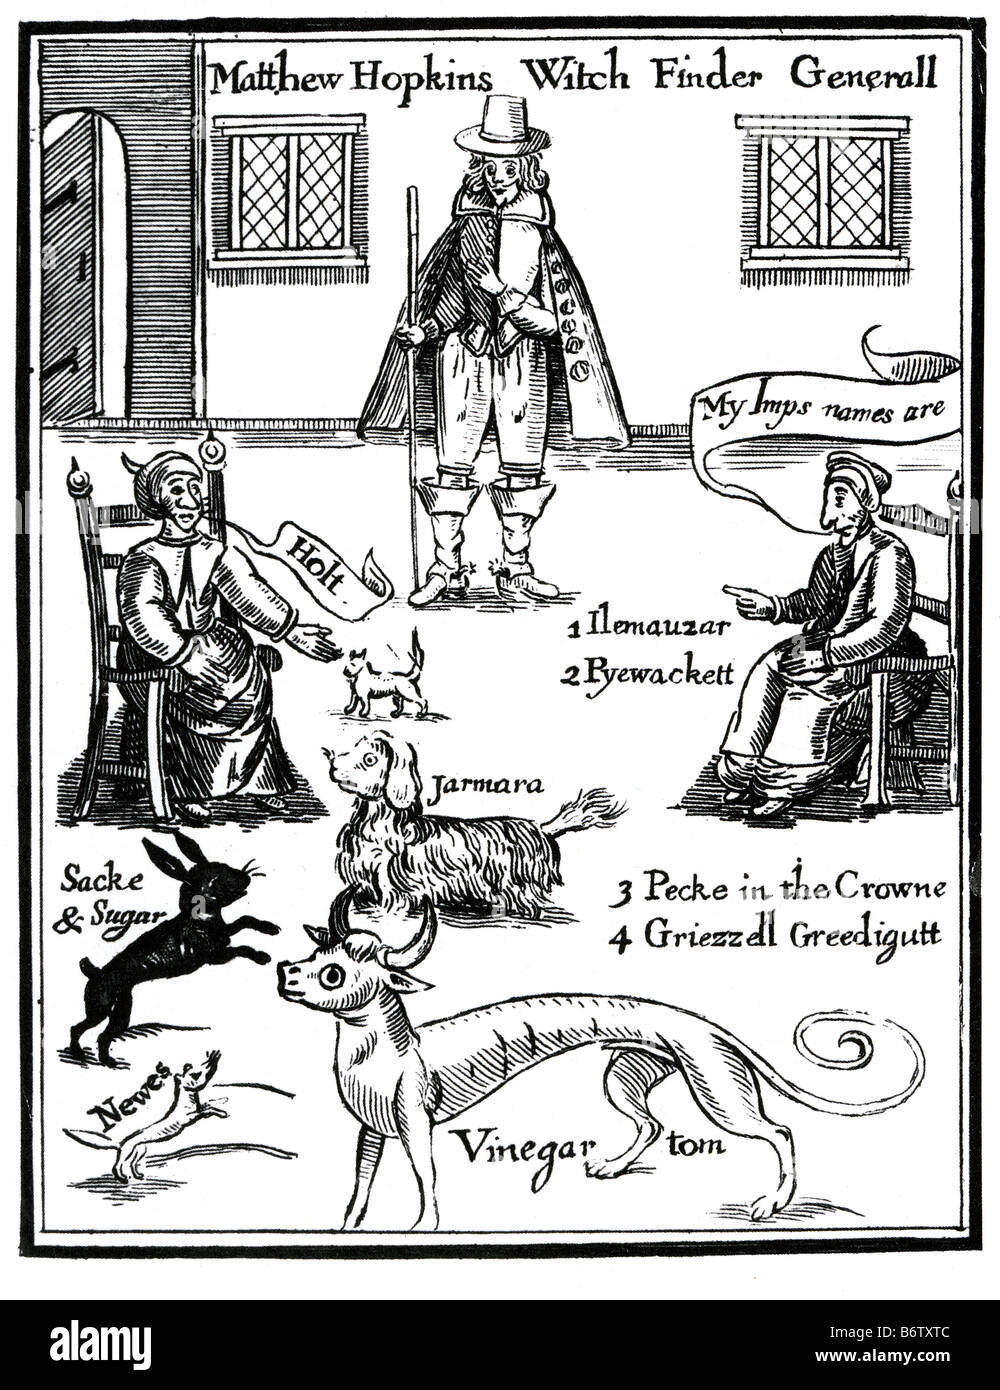 MATTHEW HOPKINS inglese 'witchfinder generale" come illustrato nel suo libro del 1647 la scoperta delle streghe. Foto Stock